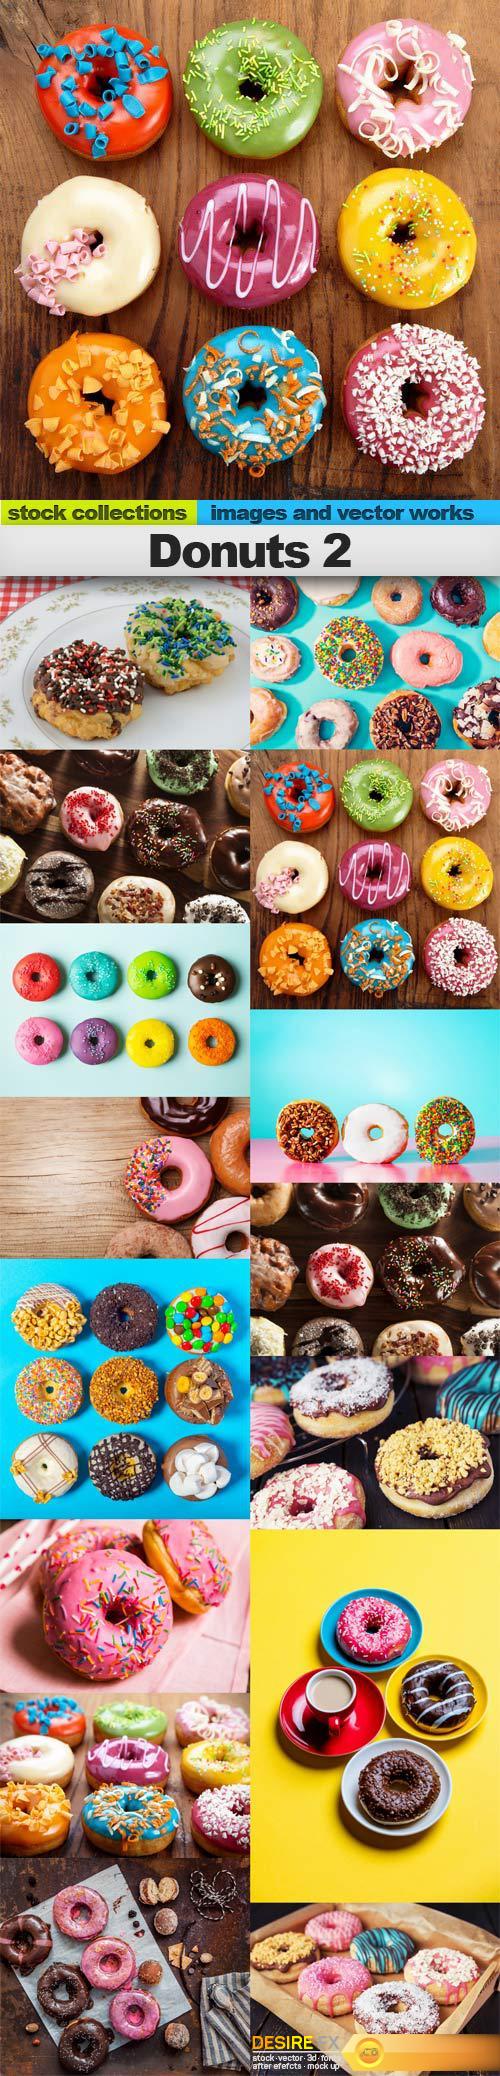 Donuts 2, 15 x UHQ JPEG